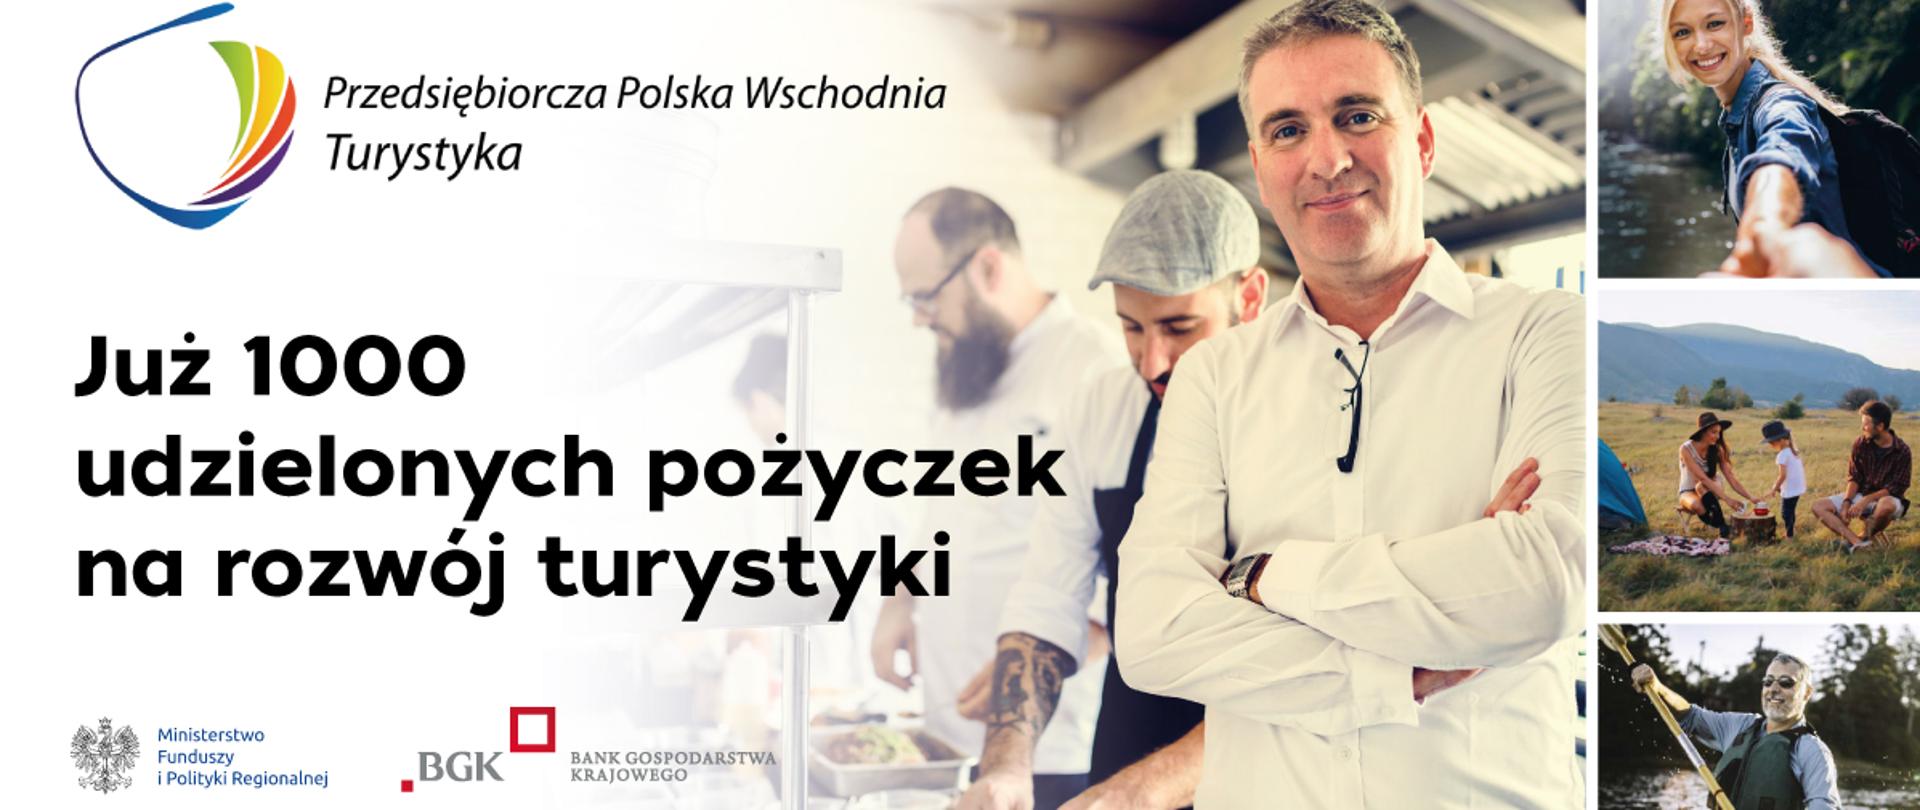 Kolaż zdjęć reklamujący Przedsiębiorczą Polskę Wschodnią Turystyka i napis: Już 1000 udzielonych pożyczek na rozwój turystyki 